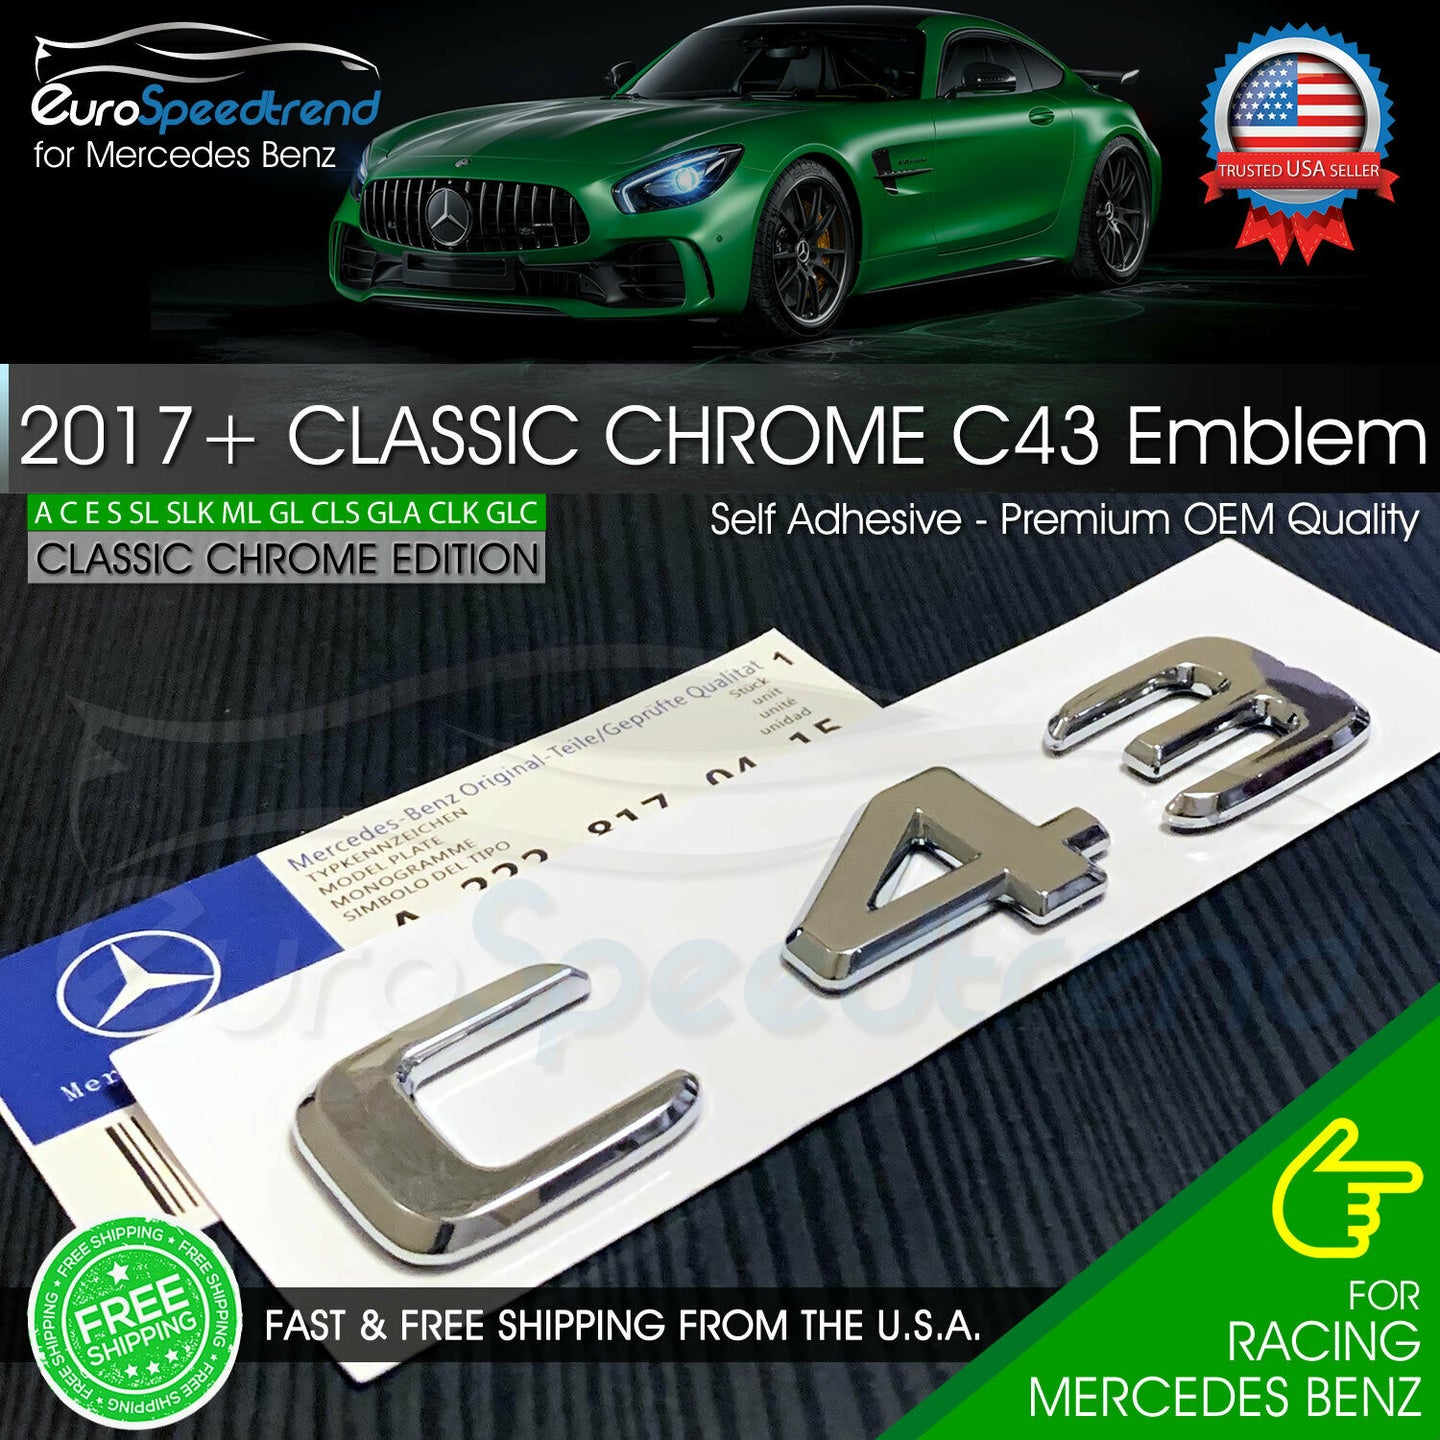 AMG C 43 Letter Emblem Chrome Trunk Rear Badge fit Mercedes Benz Logo 2017+ OEM